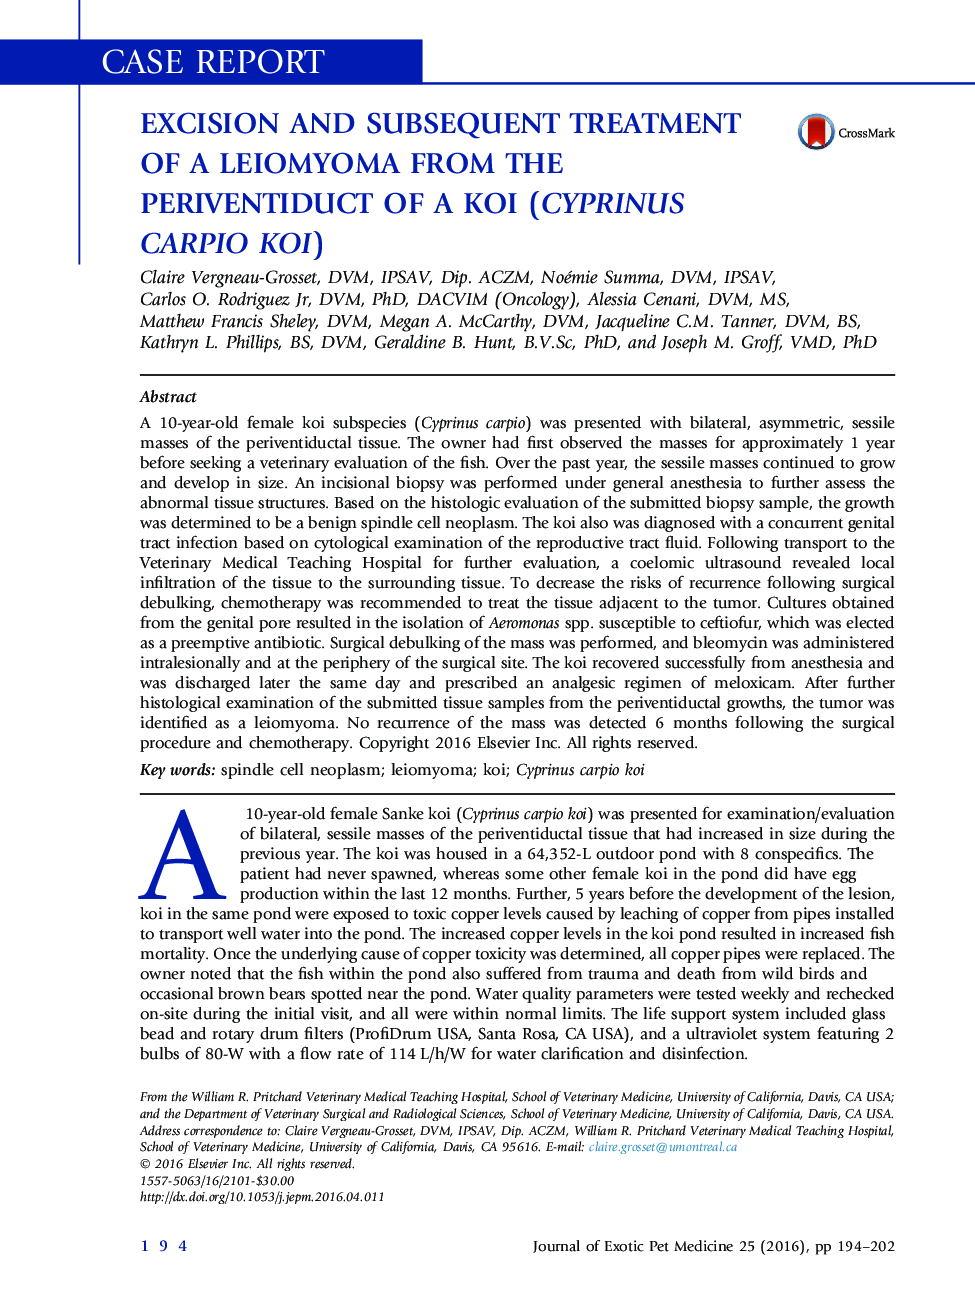 اکسزیون و درمان متعاقب یک لیومیوم از Periventiduct از Koi (Cyprinus carpio Koi )